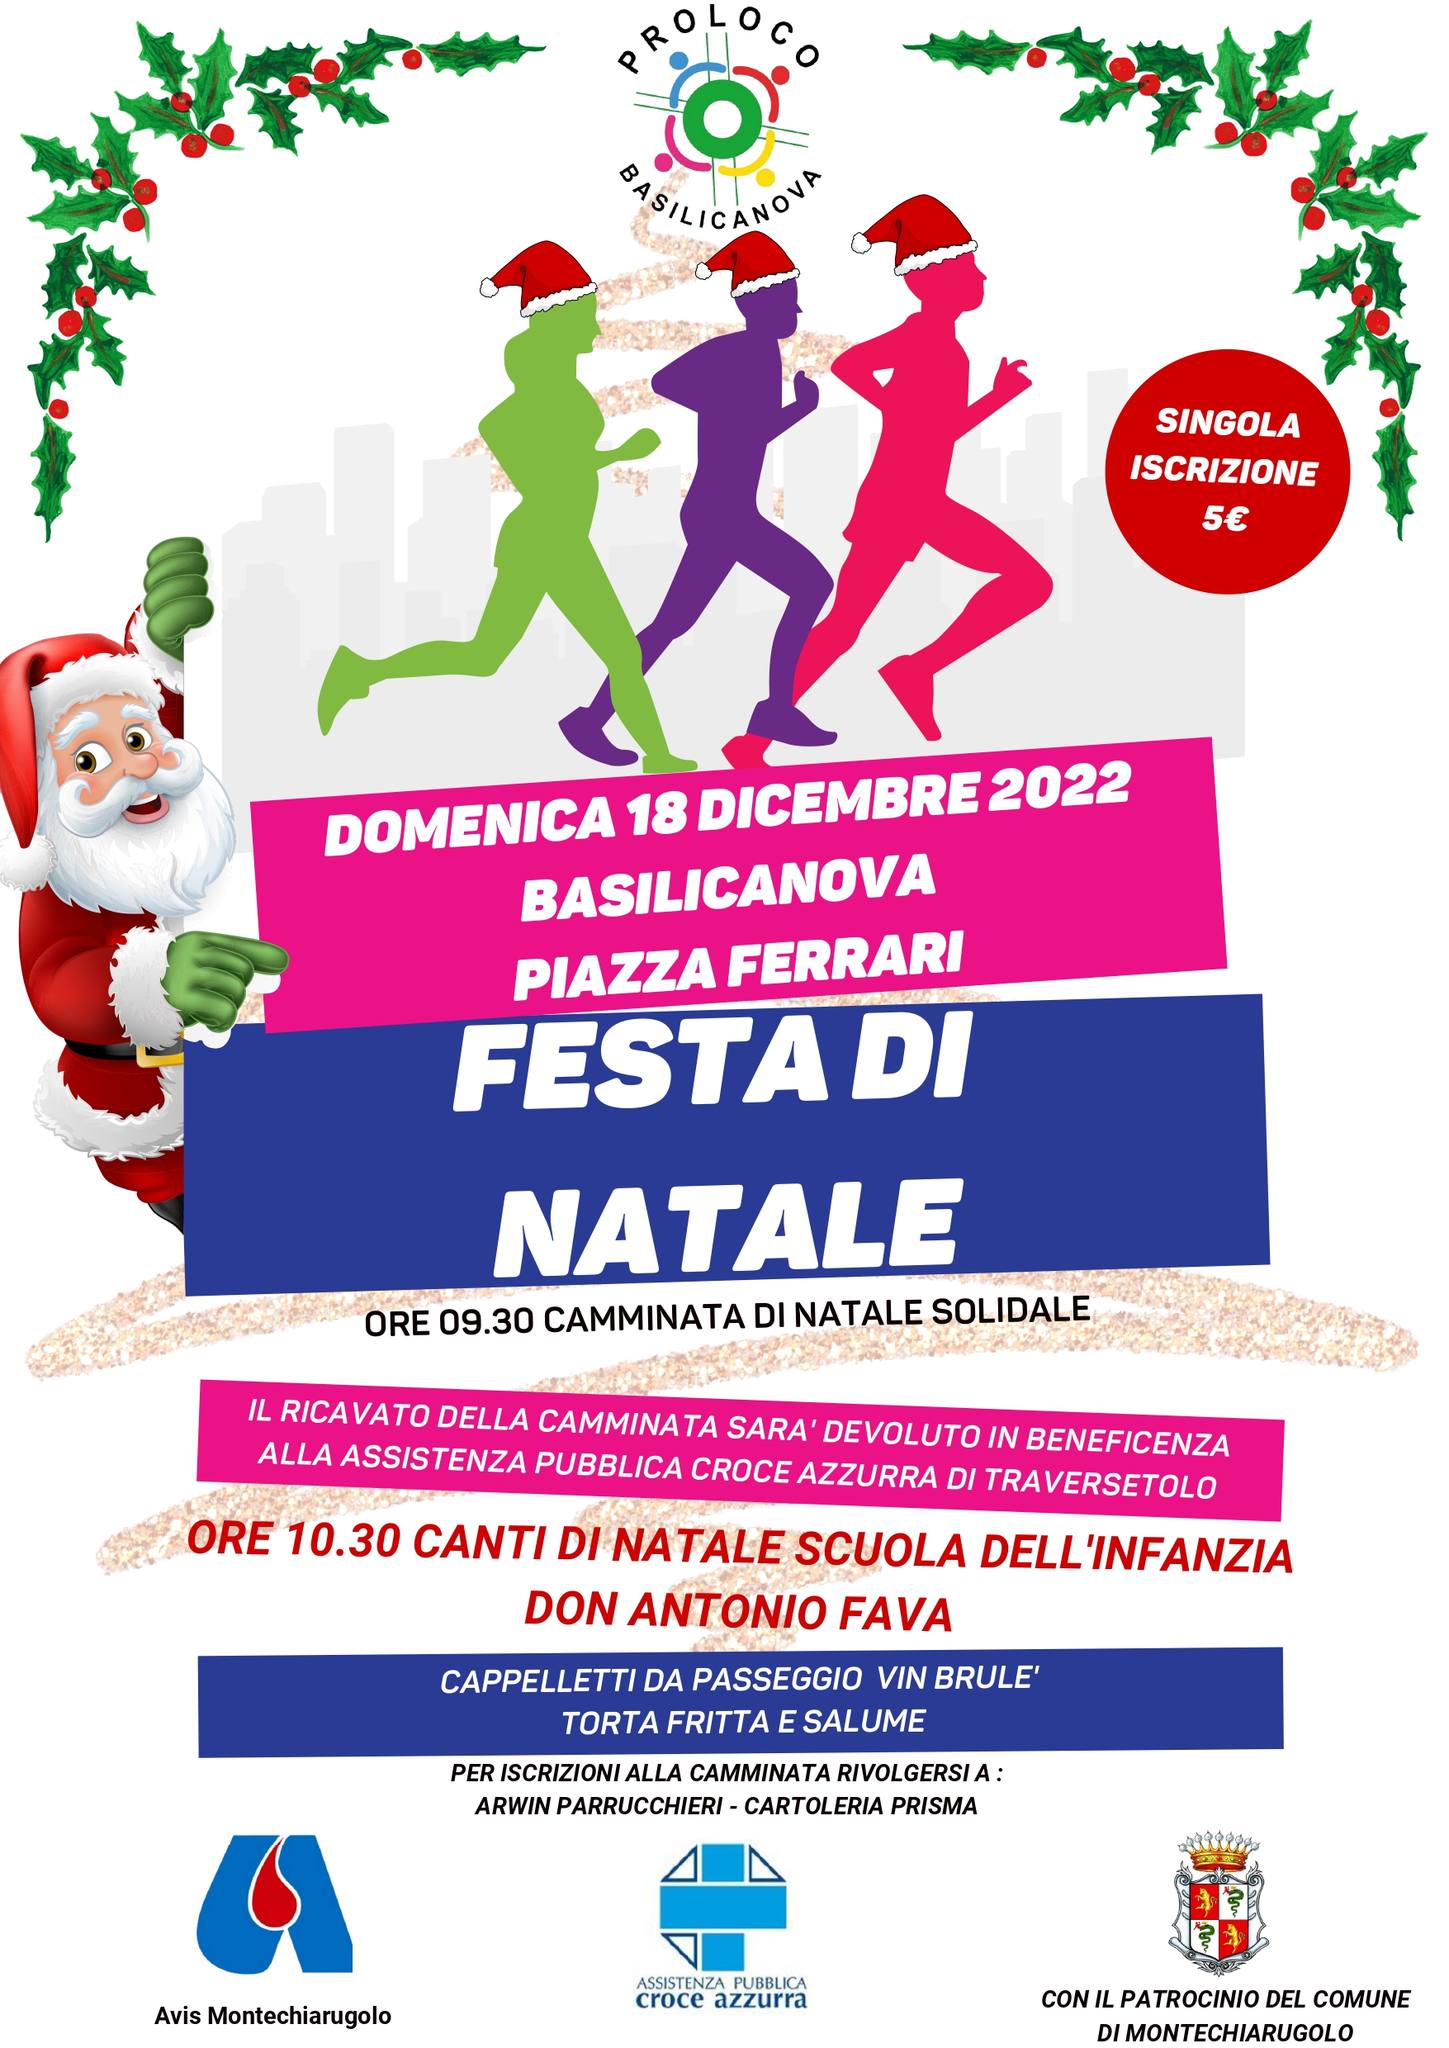 Domenica 18 dicembre in Piazza Ferrari a Basilicanova arriva la Festa di Natale organizzata dalla PRO LOCO Basilicanova